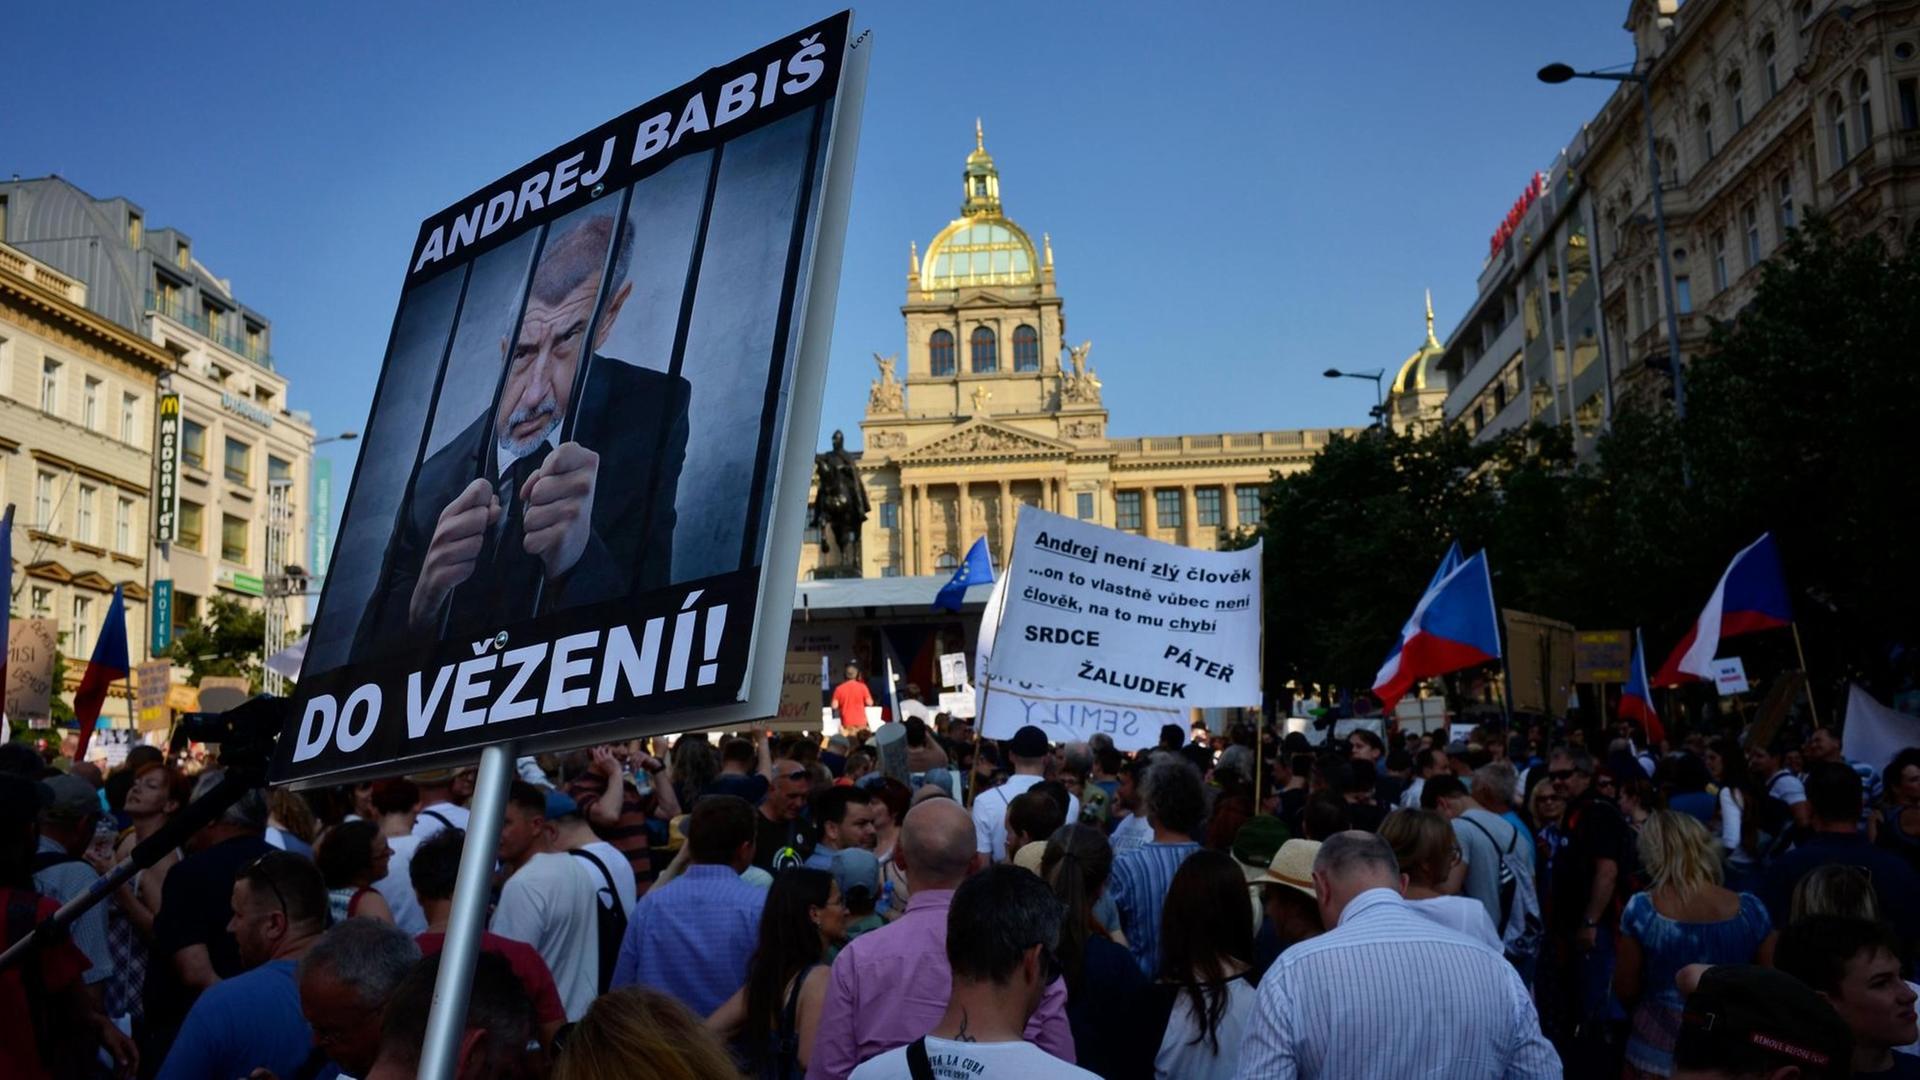 Demonstranten in Prag zeigen Schilder bei einem Protest gegen Regierungschef Babis. Auf einem ist er hinter Gittern zu sehen.